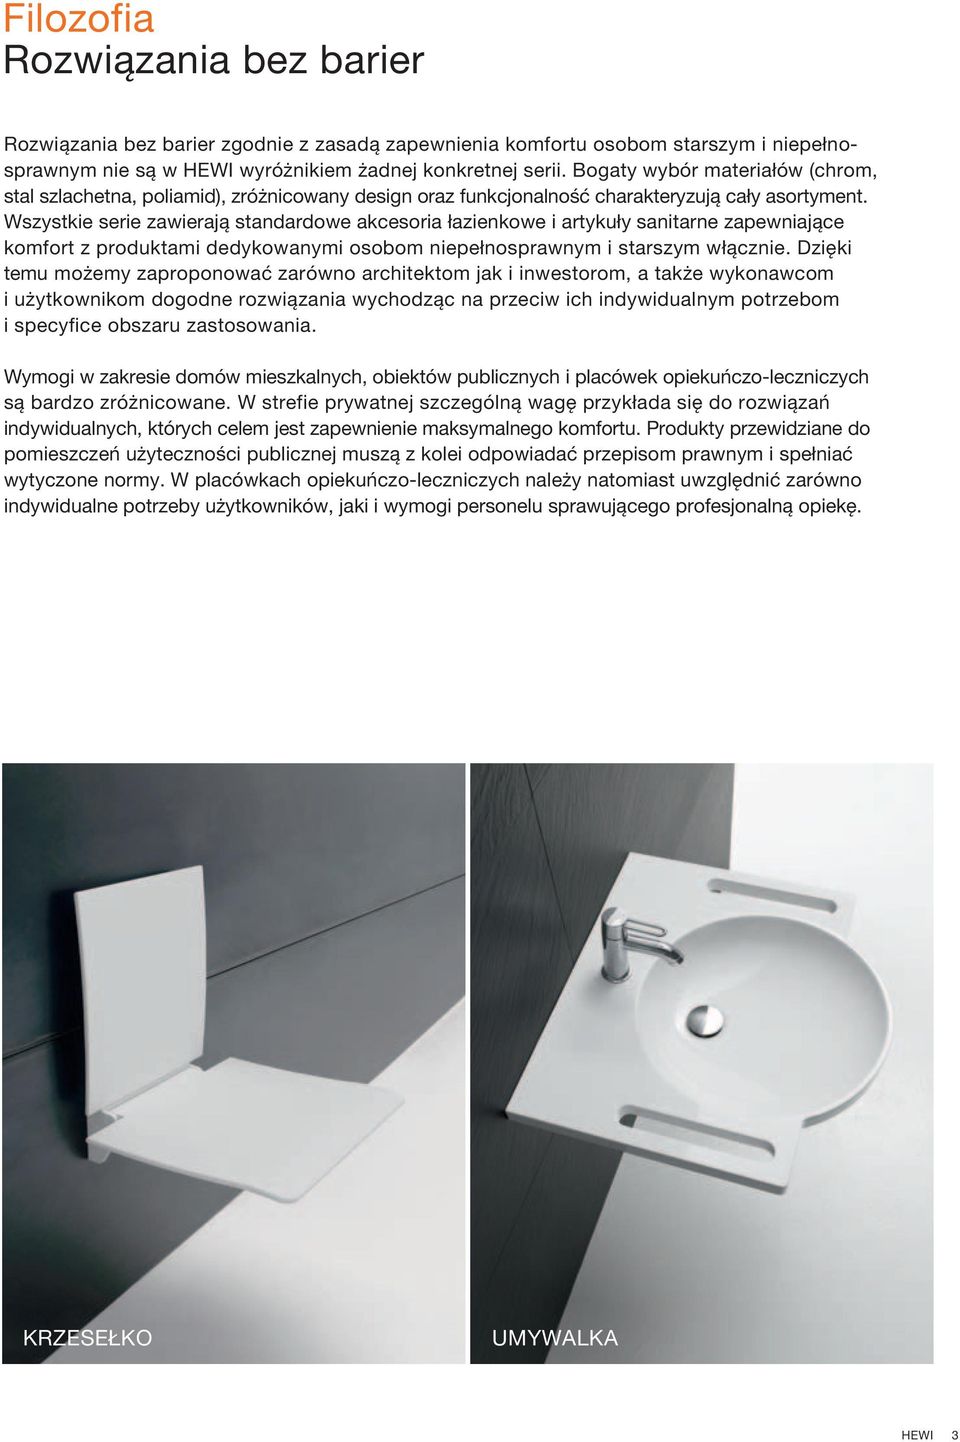 Wszystkie serie zawierają standardowe akcesoria łazienkowe i artykuły sanitarne zapewniające komfort z produktami dedykowanymi osobom niepełnosprawnym i starszym włącznie.